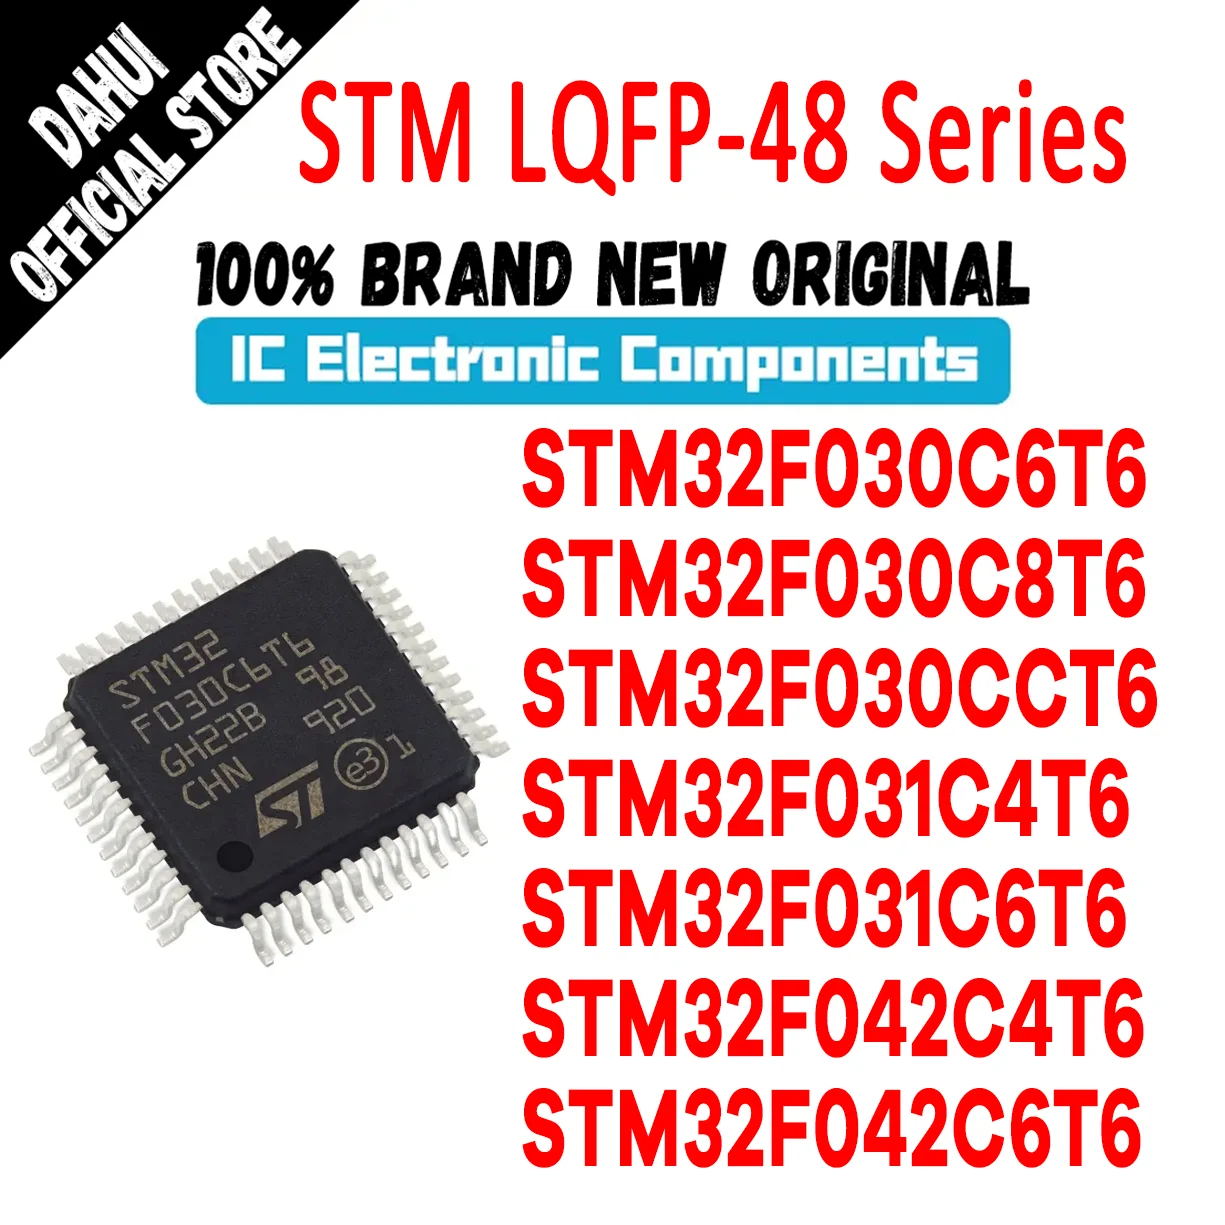 

STM32F030C6T6 STM32F030C8T6 STM32F030CCT6 STM32F031C4T6 STM32F031C6T6 STM32F042C4T6 STM32F042C6T6 STM32F STM IC MCU Chip LQFP48